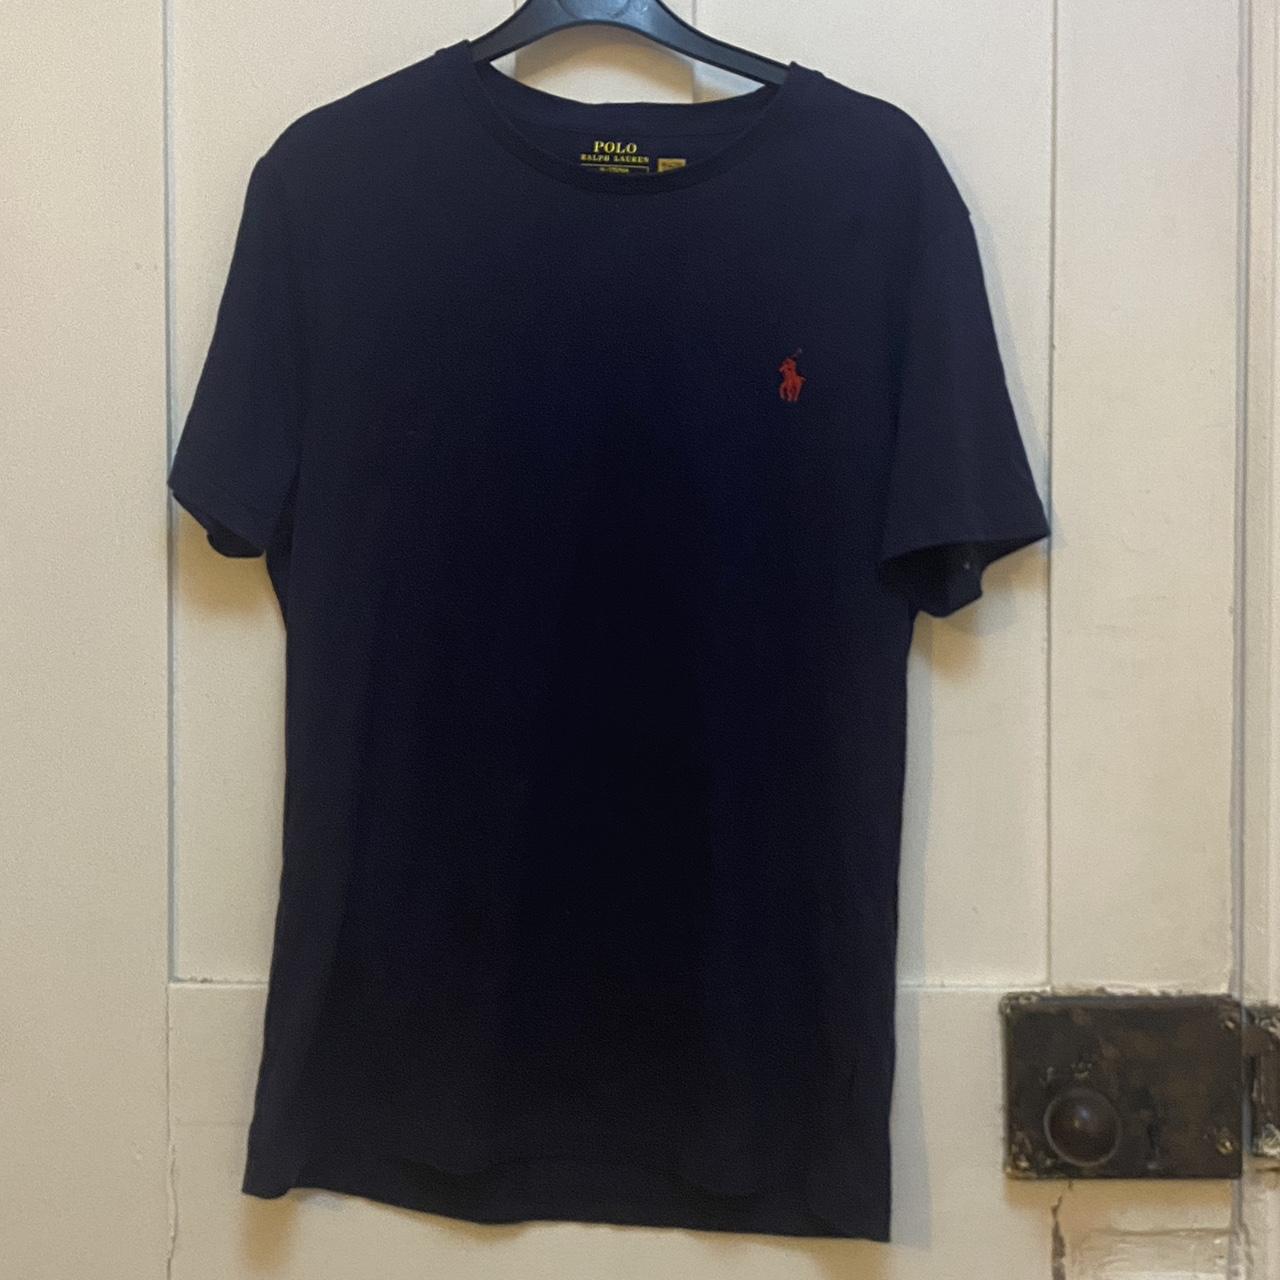 Ralph Lauren T-shirt Size - Medium (slim fit)... - Depop